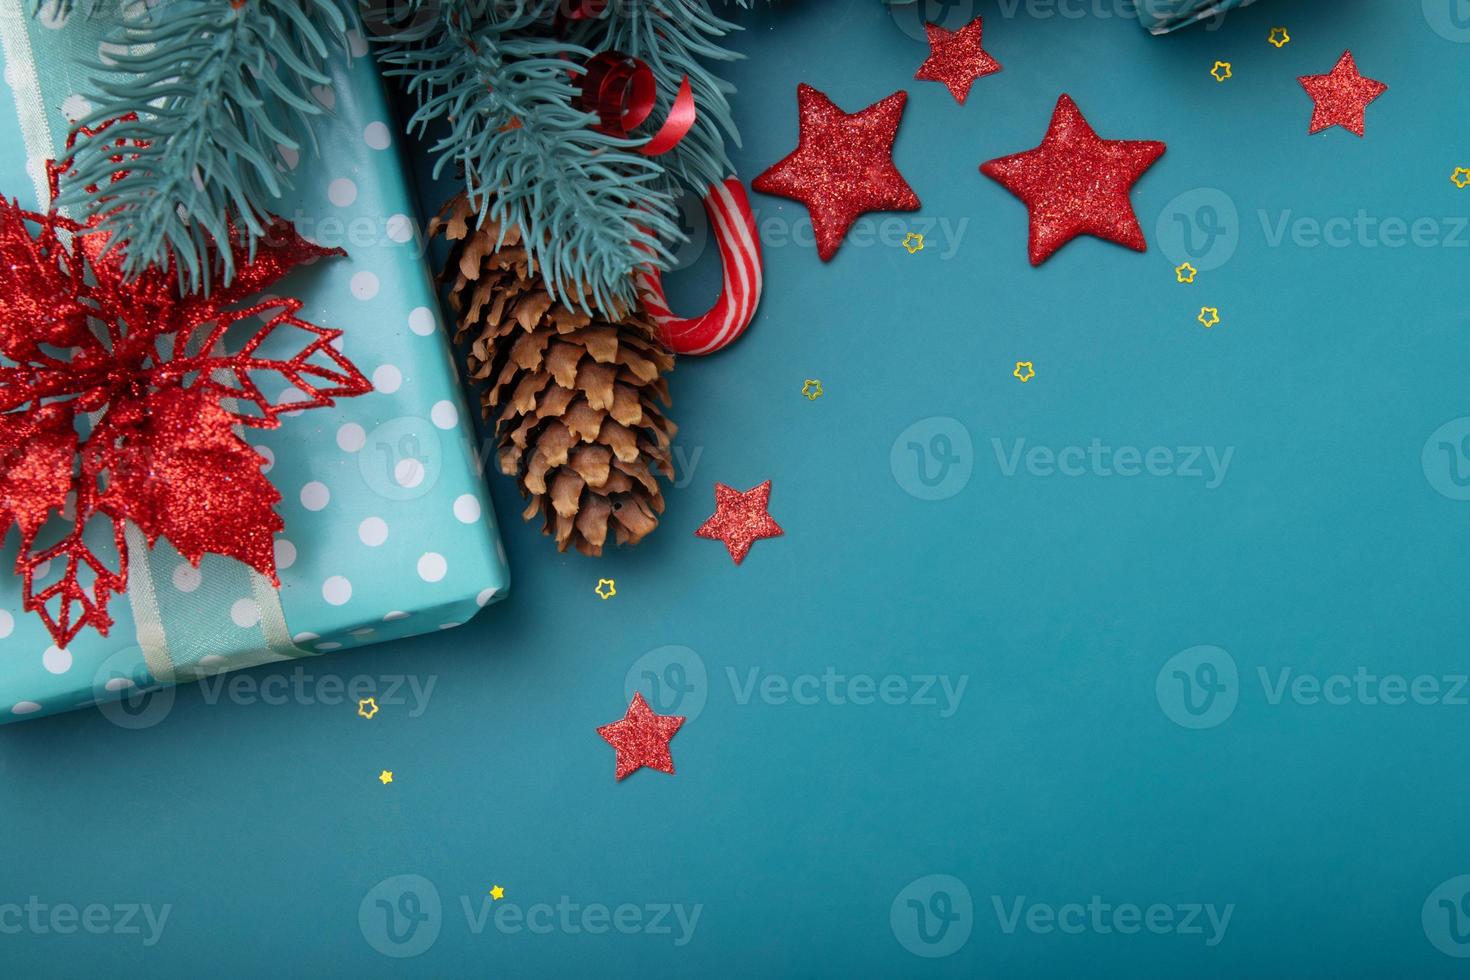 Feliz Navidad saludo texto con composición festiva de regalos, conos, piruletas y estrellas copie el espacio foto